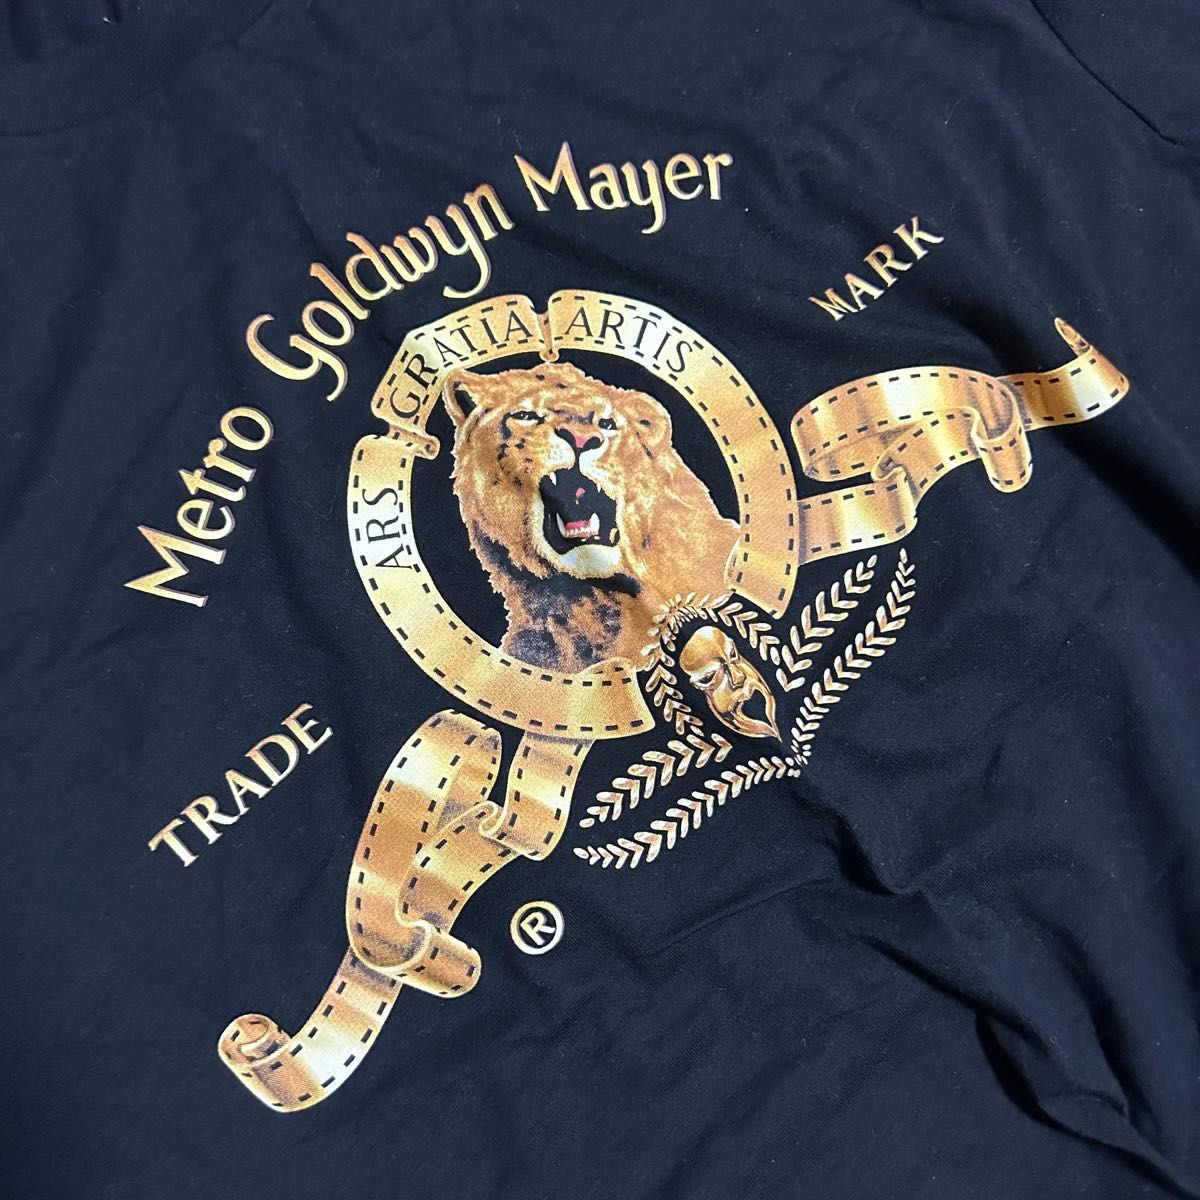 【タグ付き新品】H&M メトロ・ゴールドウィン・メイヤー MGM Tシャツ